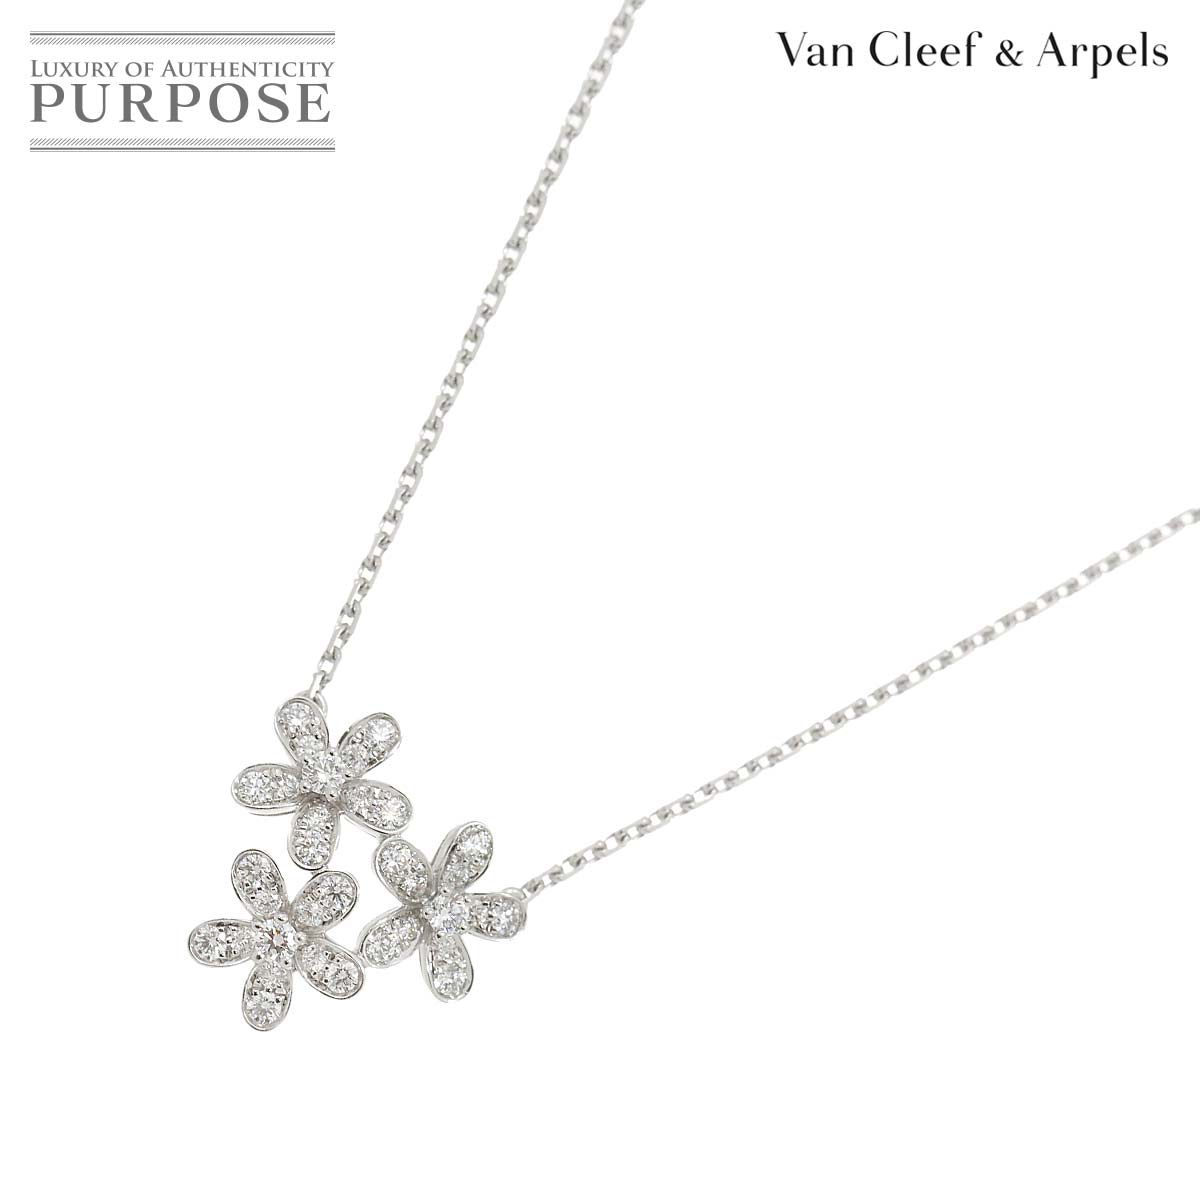 【新品同様】 ヴァンクリーフ & アーペル Van Cleef & Arpels ソクラテス 3フラワー ダイヤ ネックレス 42cm K18 WG 750 Diamond Necklace【証明書付き】【中古】